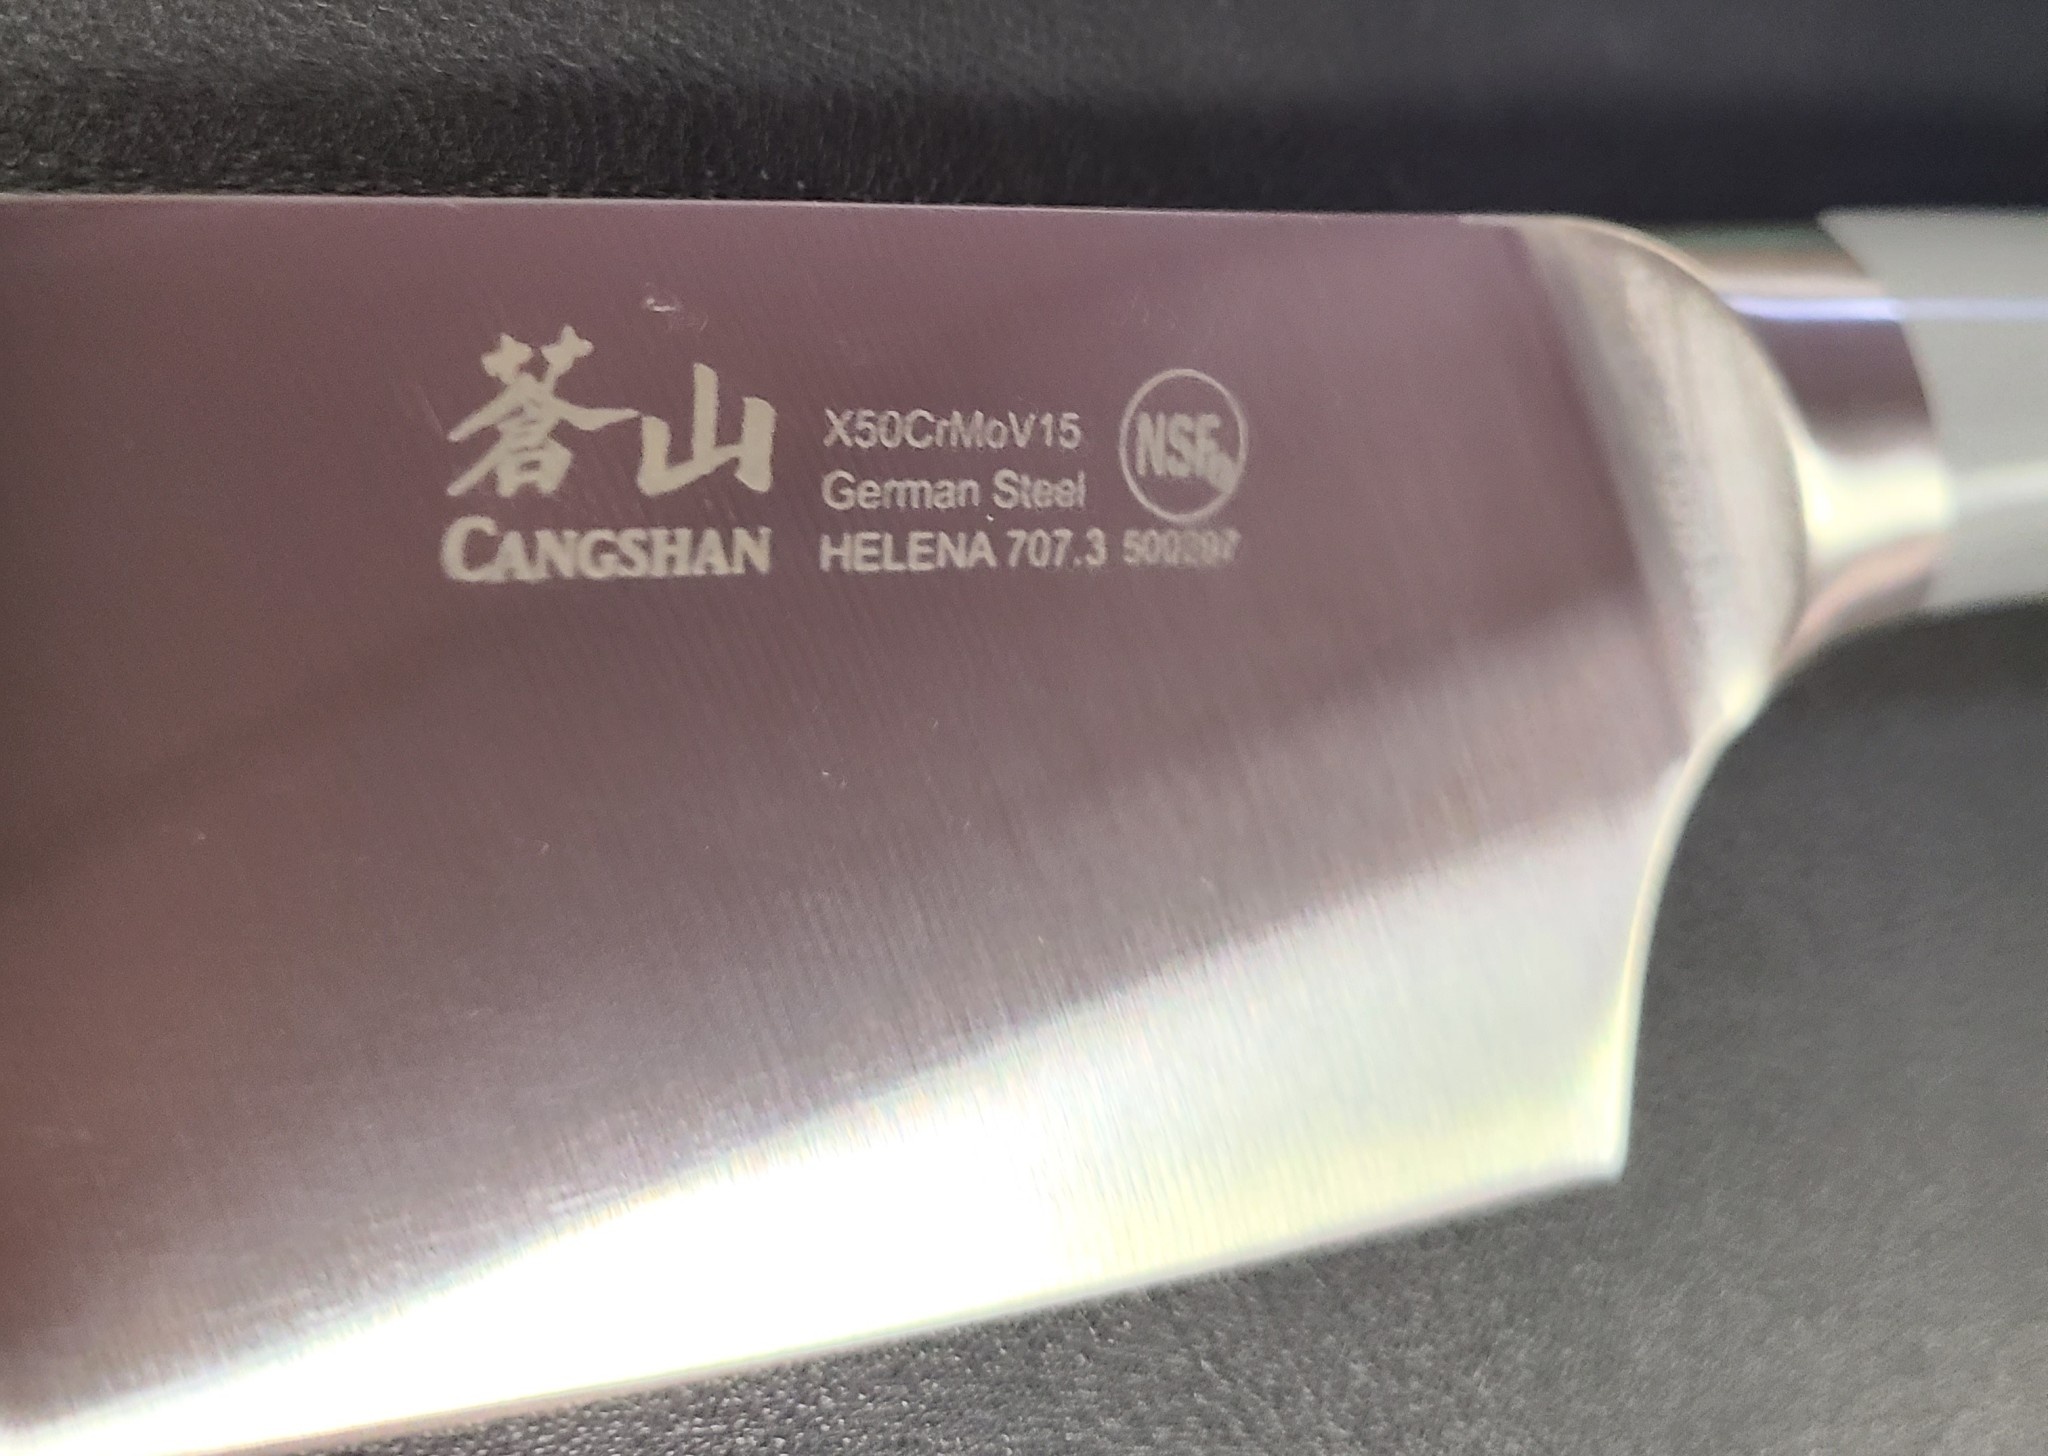 Cangshan Helena 8-Inch Chef's Knife Grey - 500397